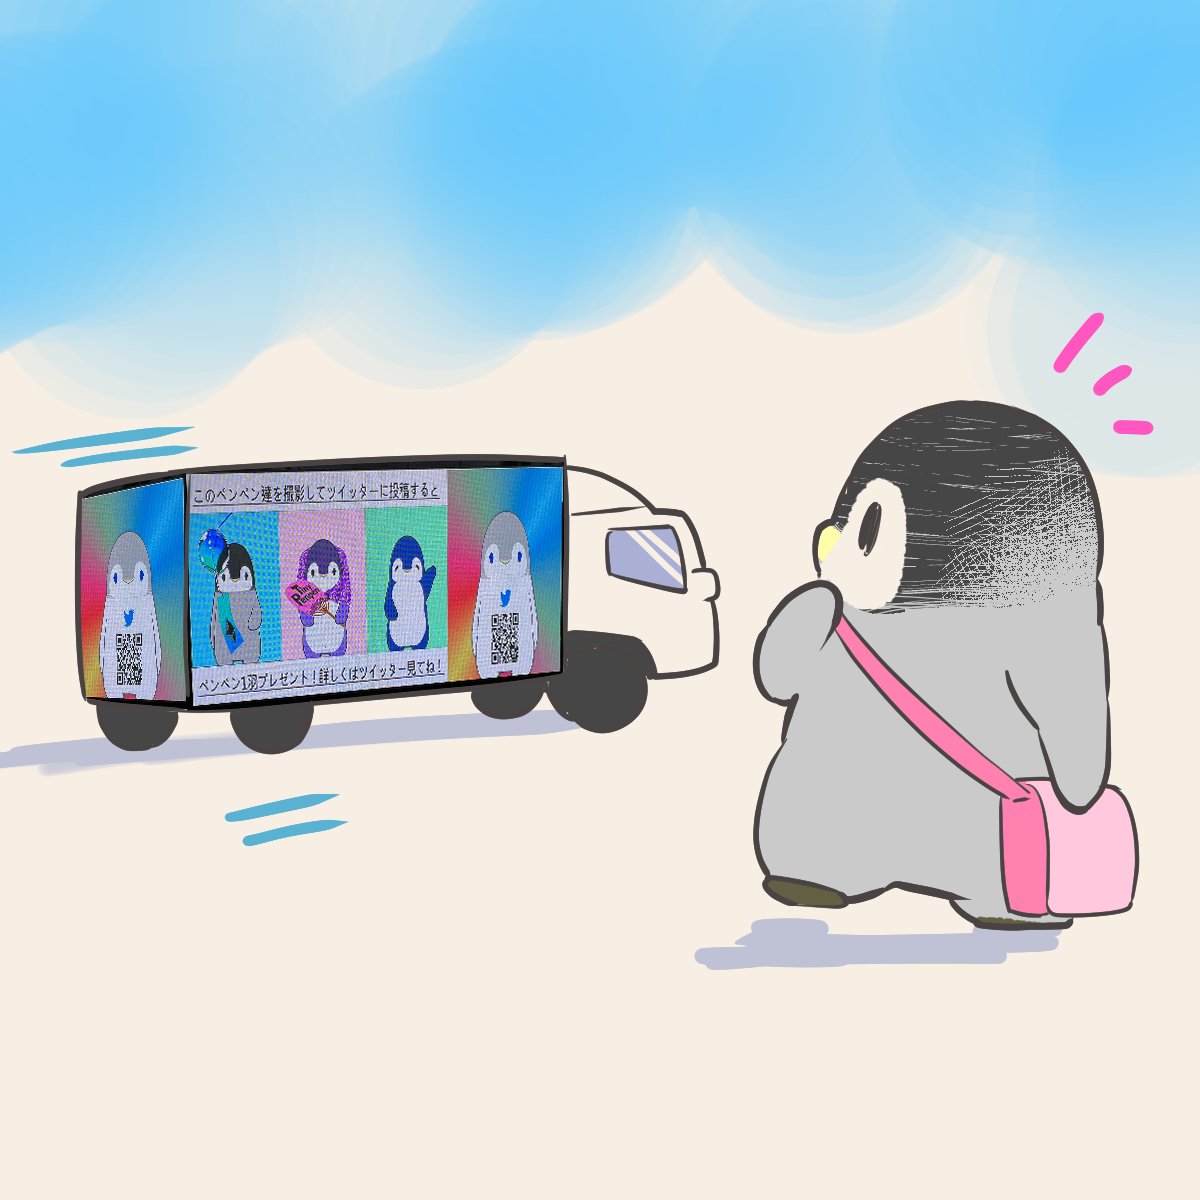 「ペンペンのアドトラックが 明日27日も渋谷を走ります  ネタじゃなくてほんとには」|皇帝ペンギンのペンペンのイラスト